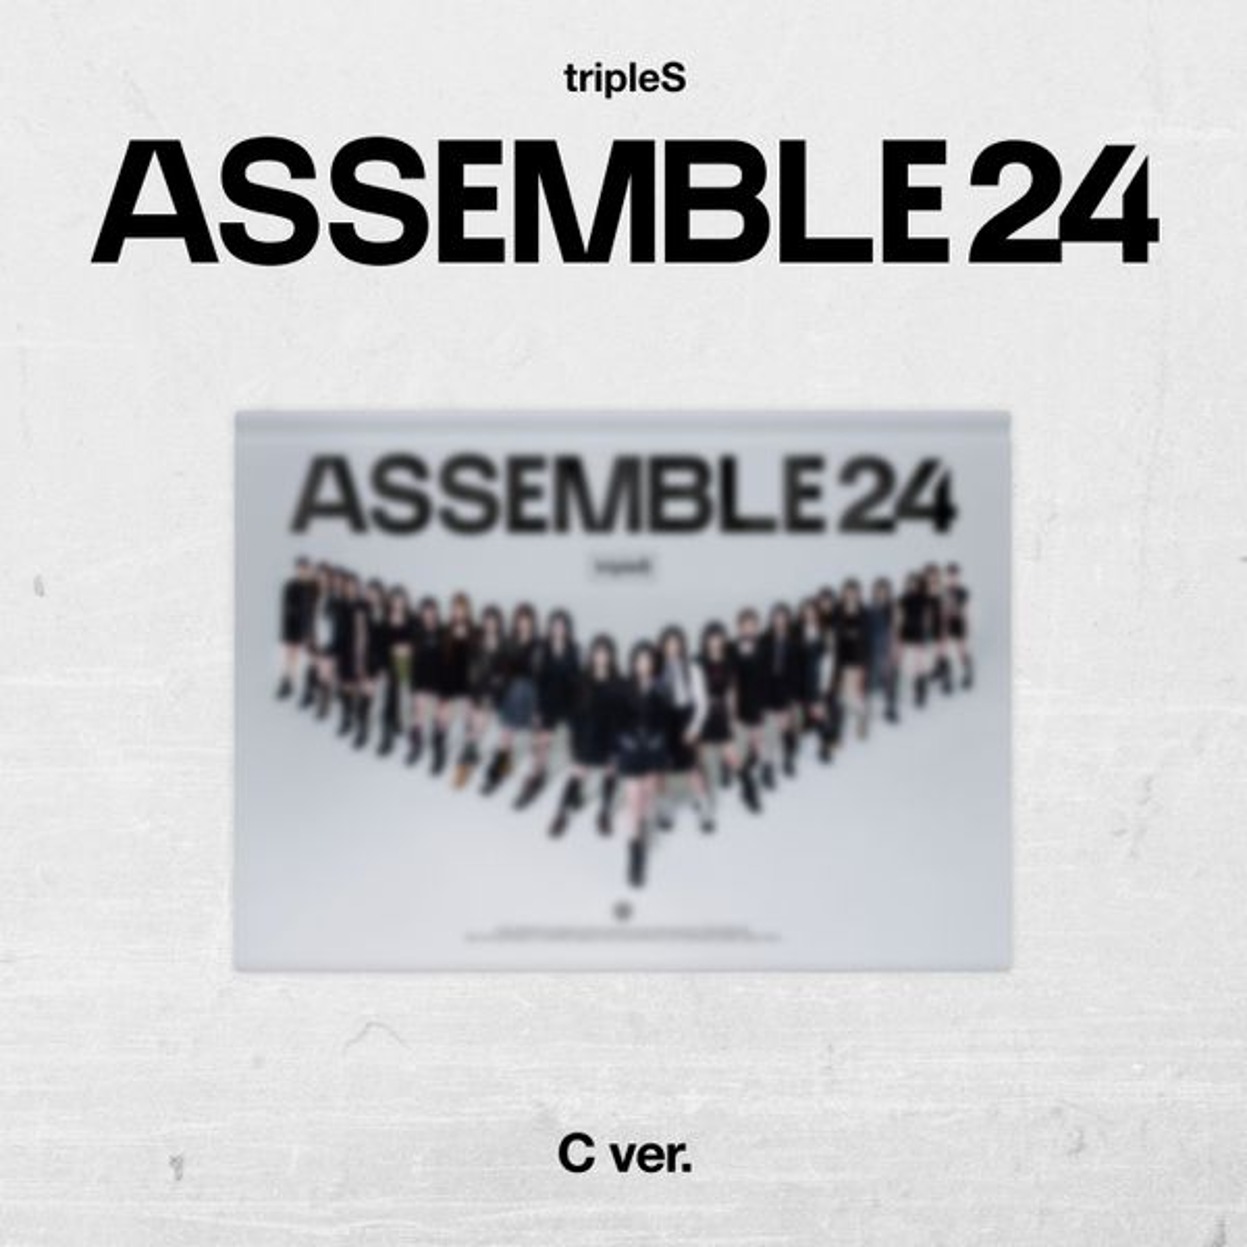 트리플에스 (tripleS) - 정규앨범 1집 [ASSEMBLE24] B Ver.